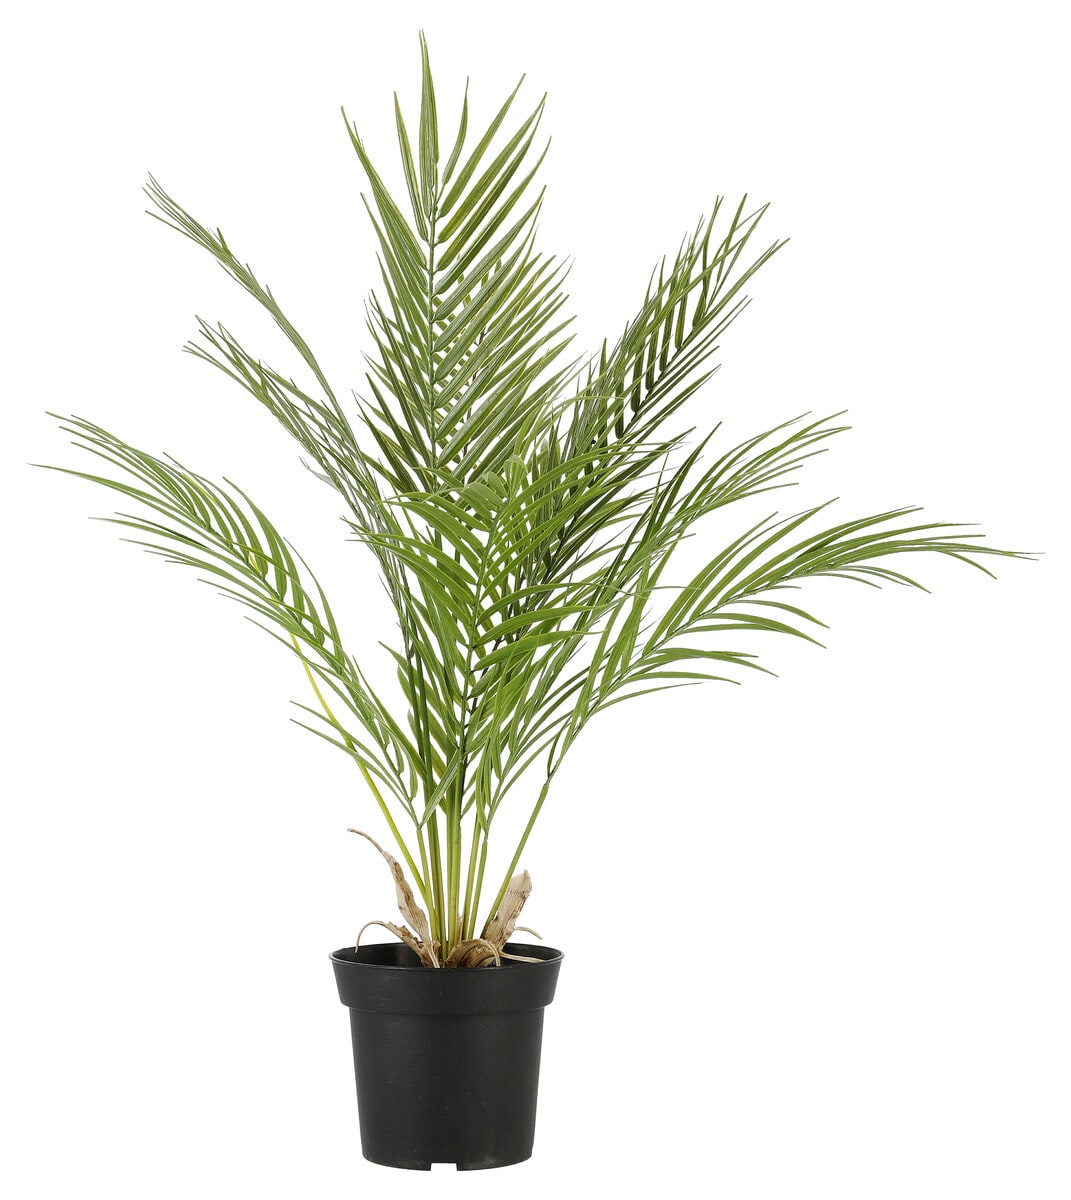 Kunstig palme, 64 cm